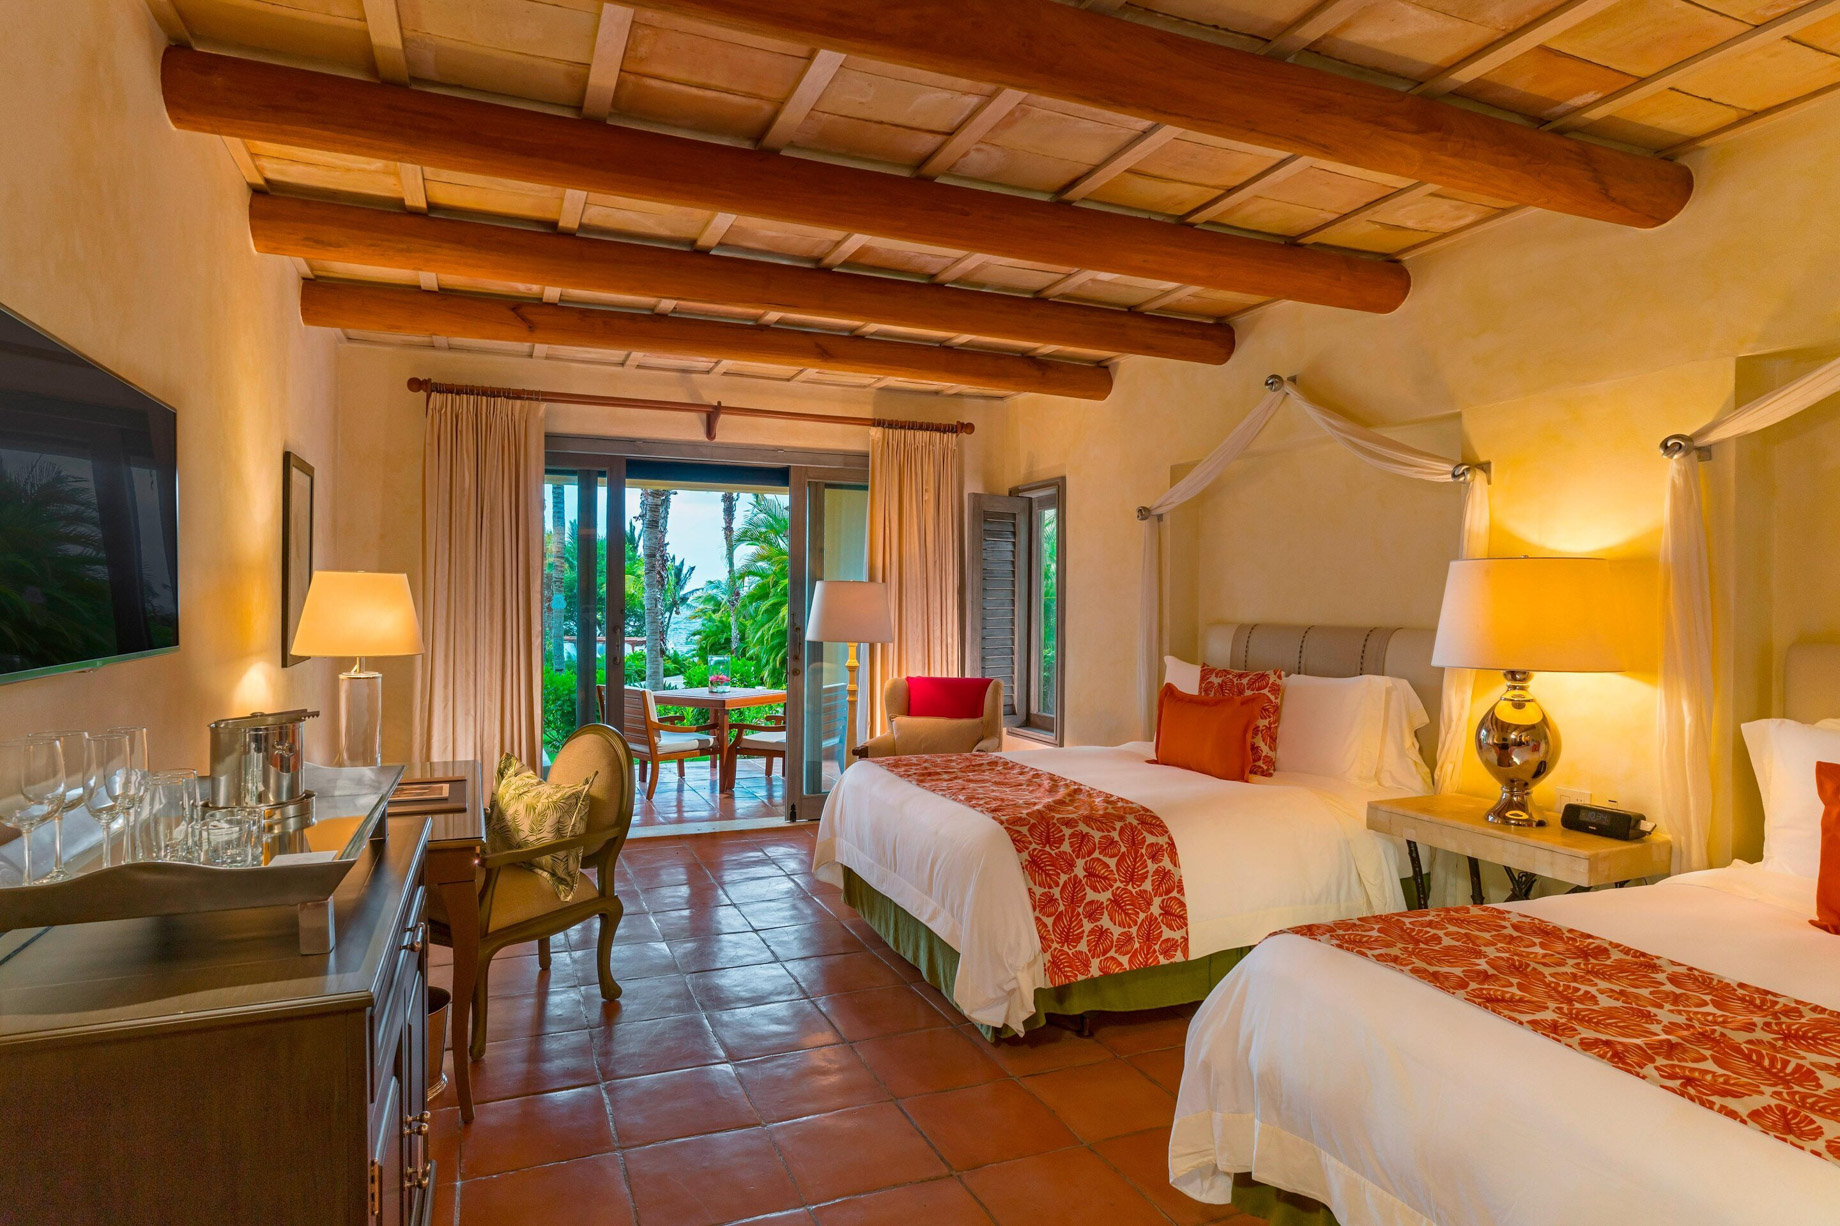 The St. Regis Punta Mita Resort – Nayarit, Mexico – Deluxe Queen Guest Room